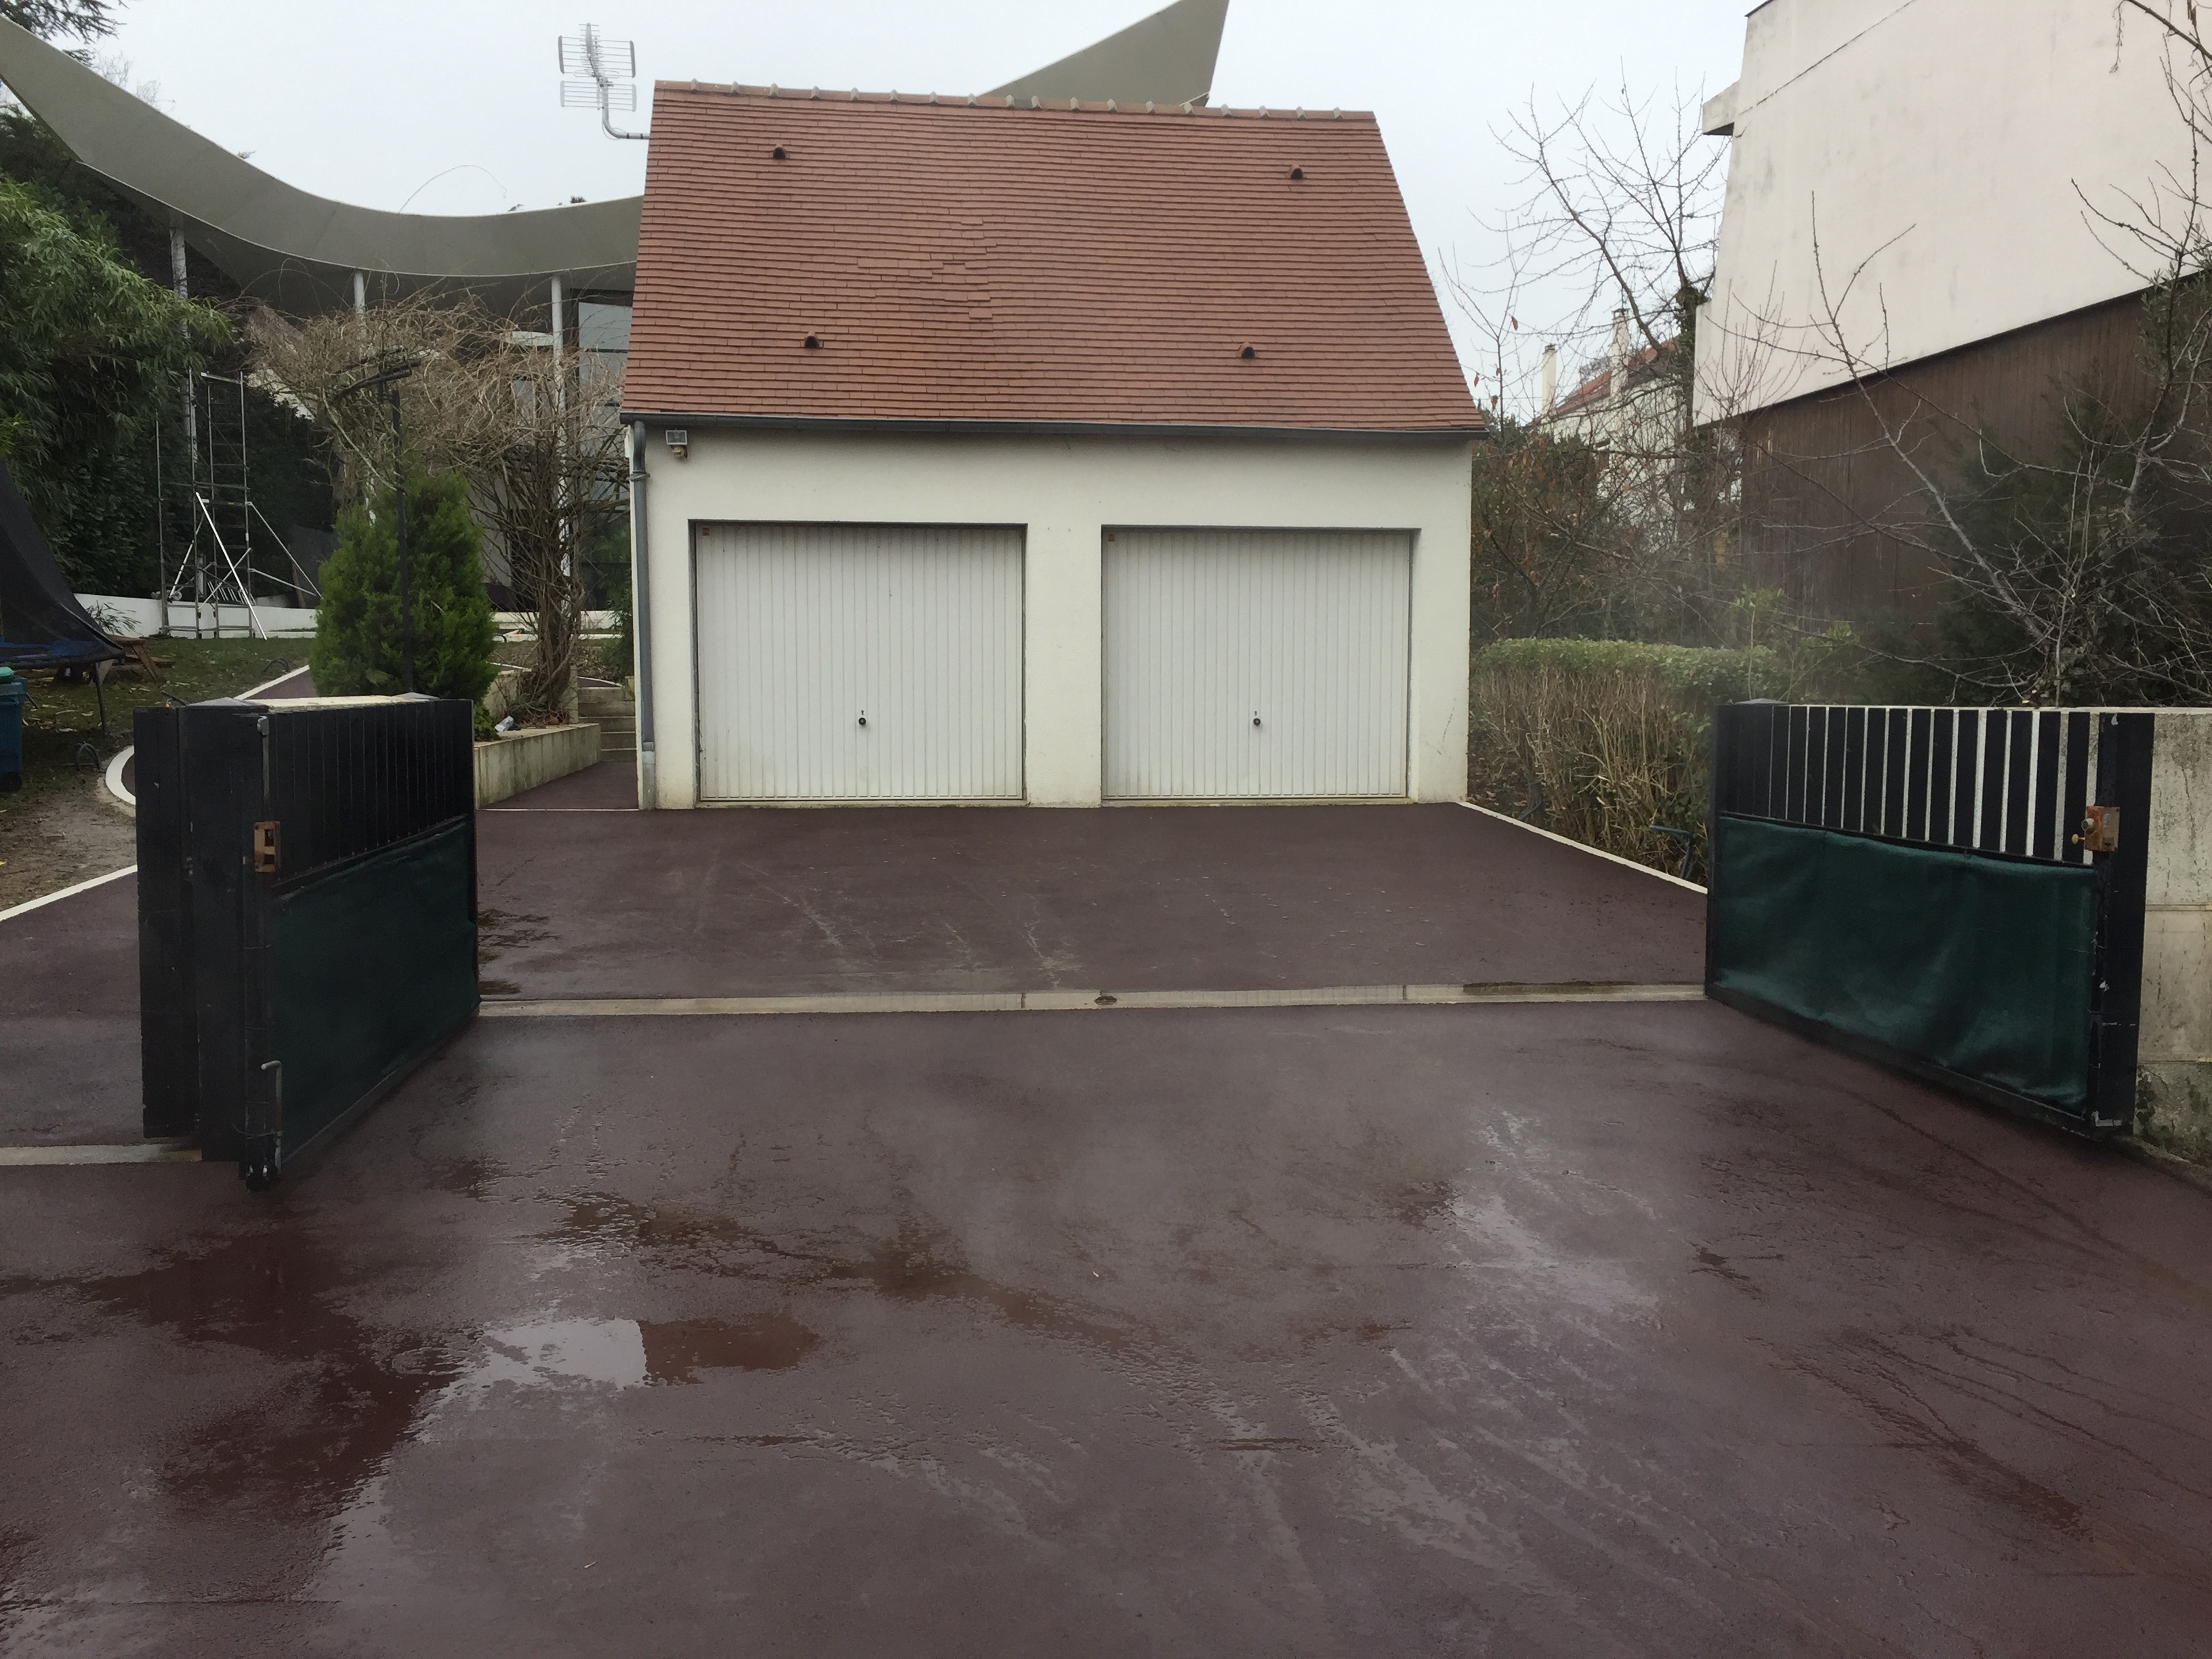 Conception Alle de garage en enrob rouge  chaud - Entreprise Menegazzi - Yvelines cre le 17/12/2018